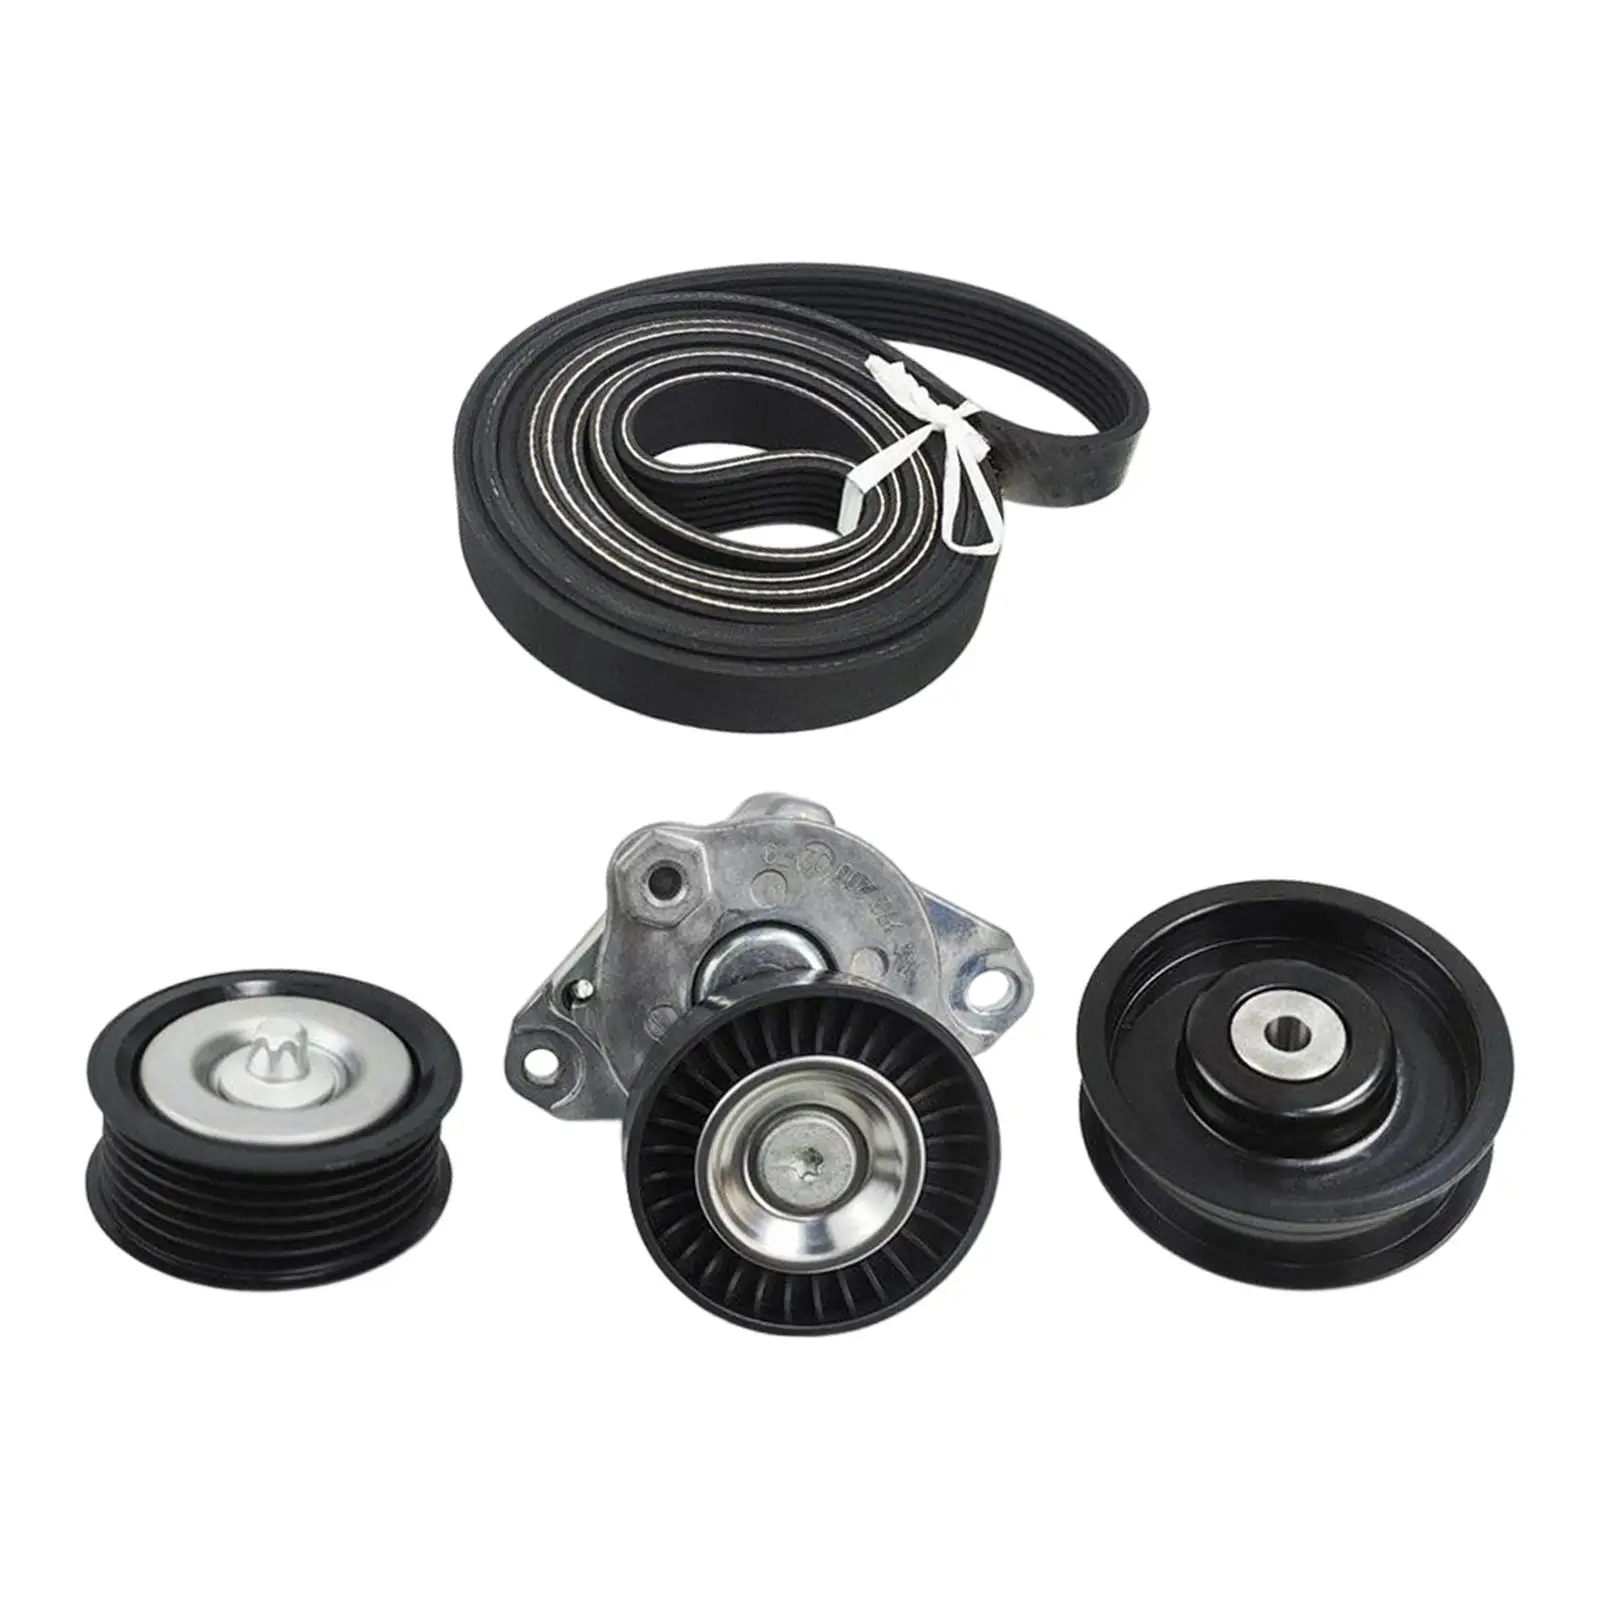 Engine Drive Belt Tensioner & Idler Pulley Serpentine Belt Kit for Mercedes-benz C230 C280 E550 SL550 SLK280 ml550